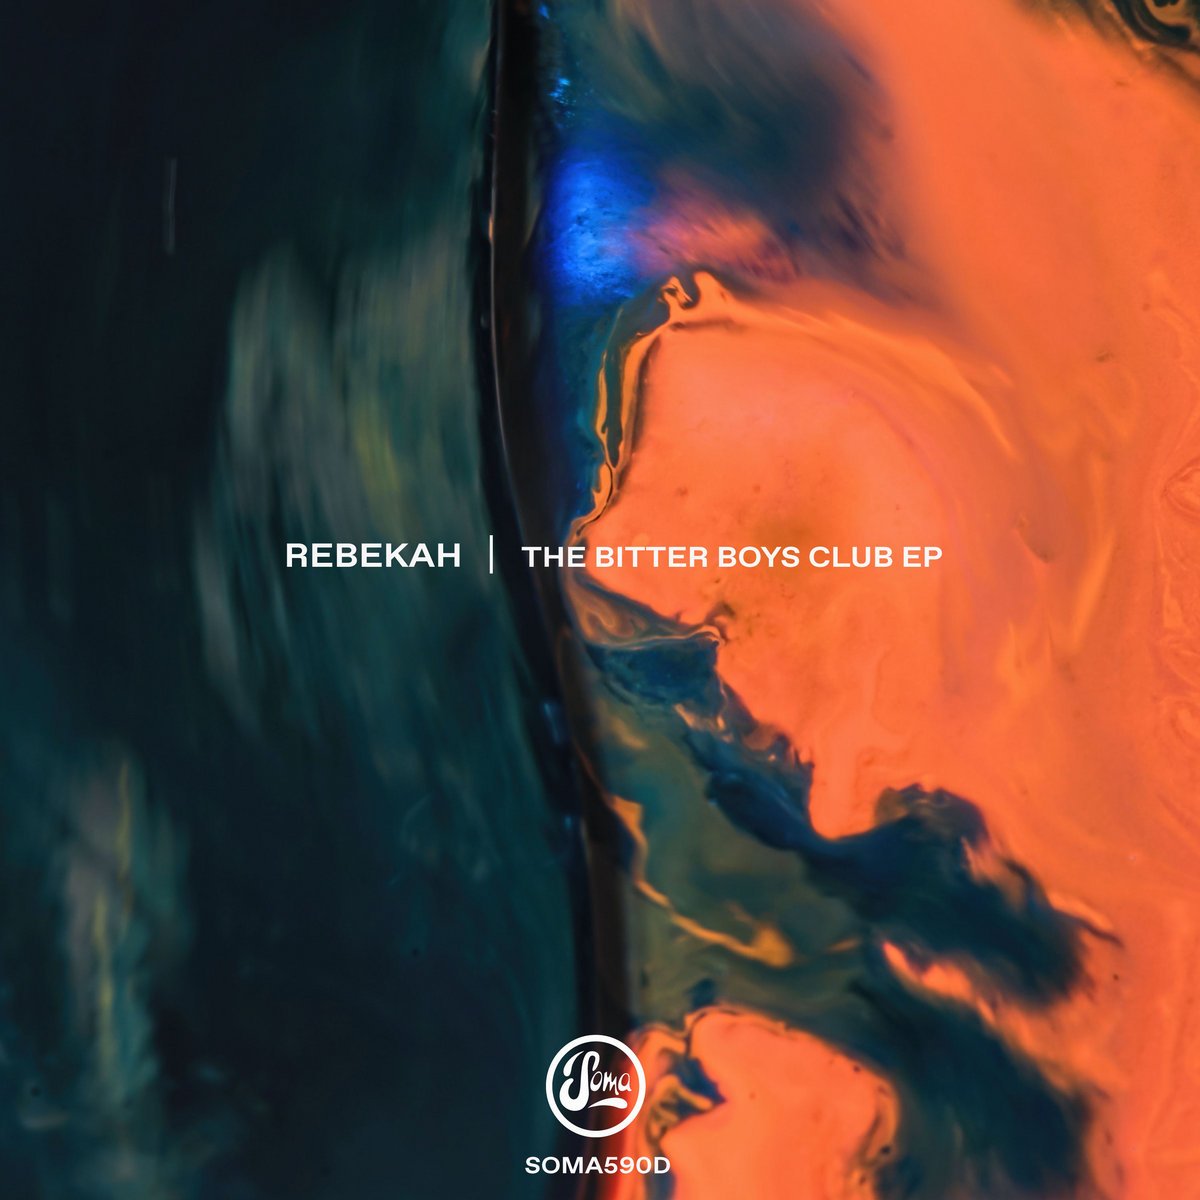 Rebekah-The Bitter Boys Club EP-(SOMA590D)-24BIT-WEB-FLAC-2020-BABAS